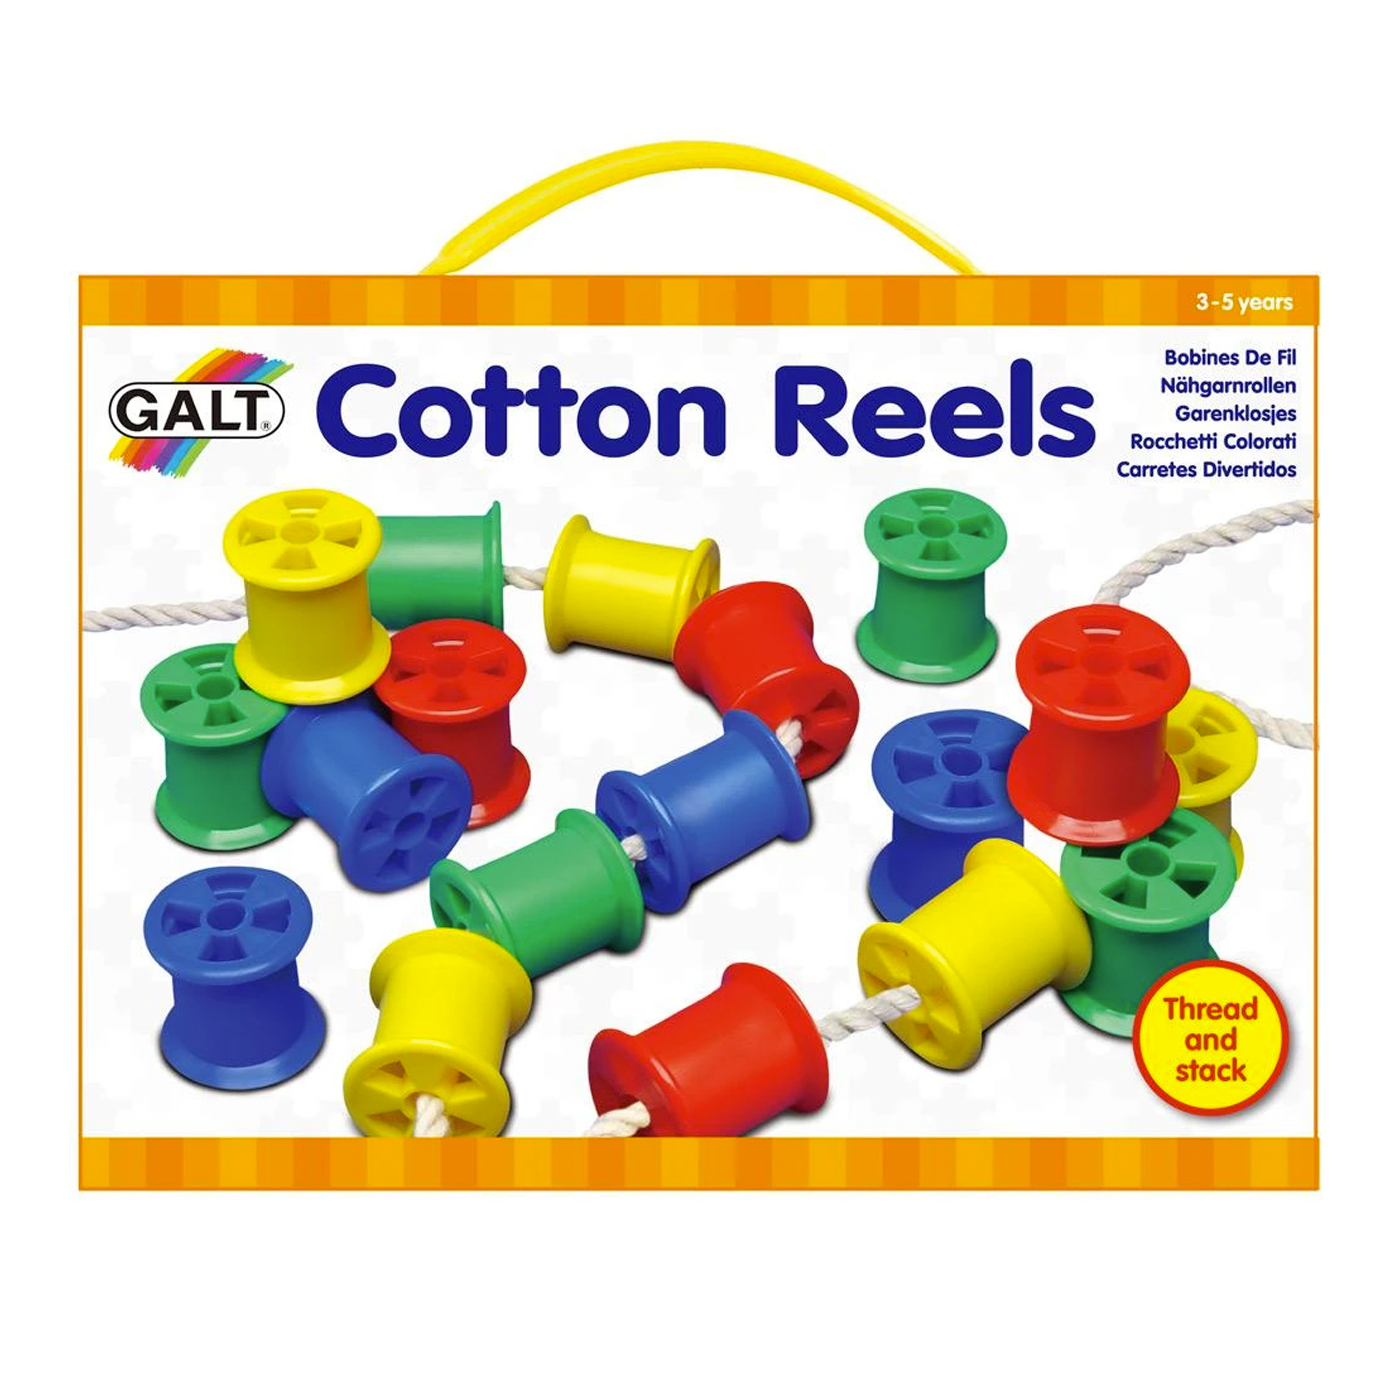  Galt Cotton Reels